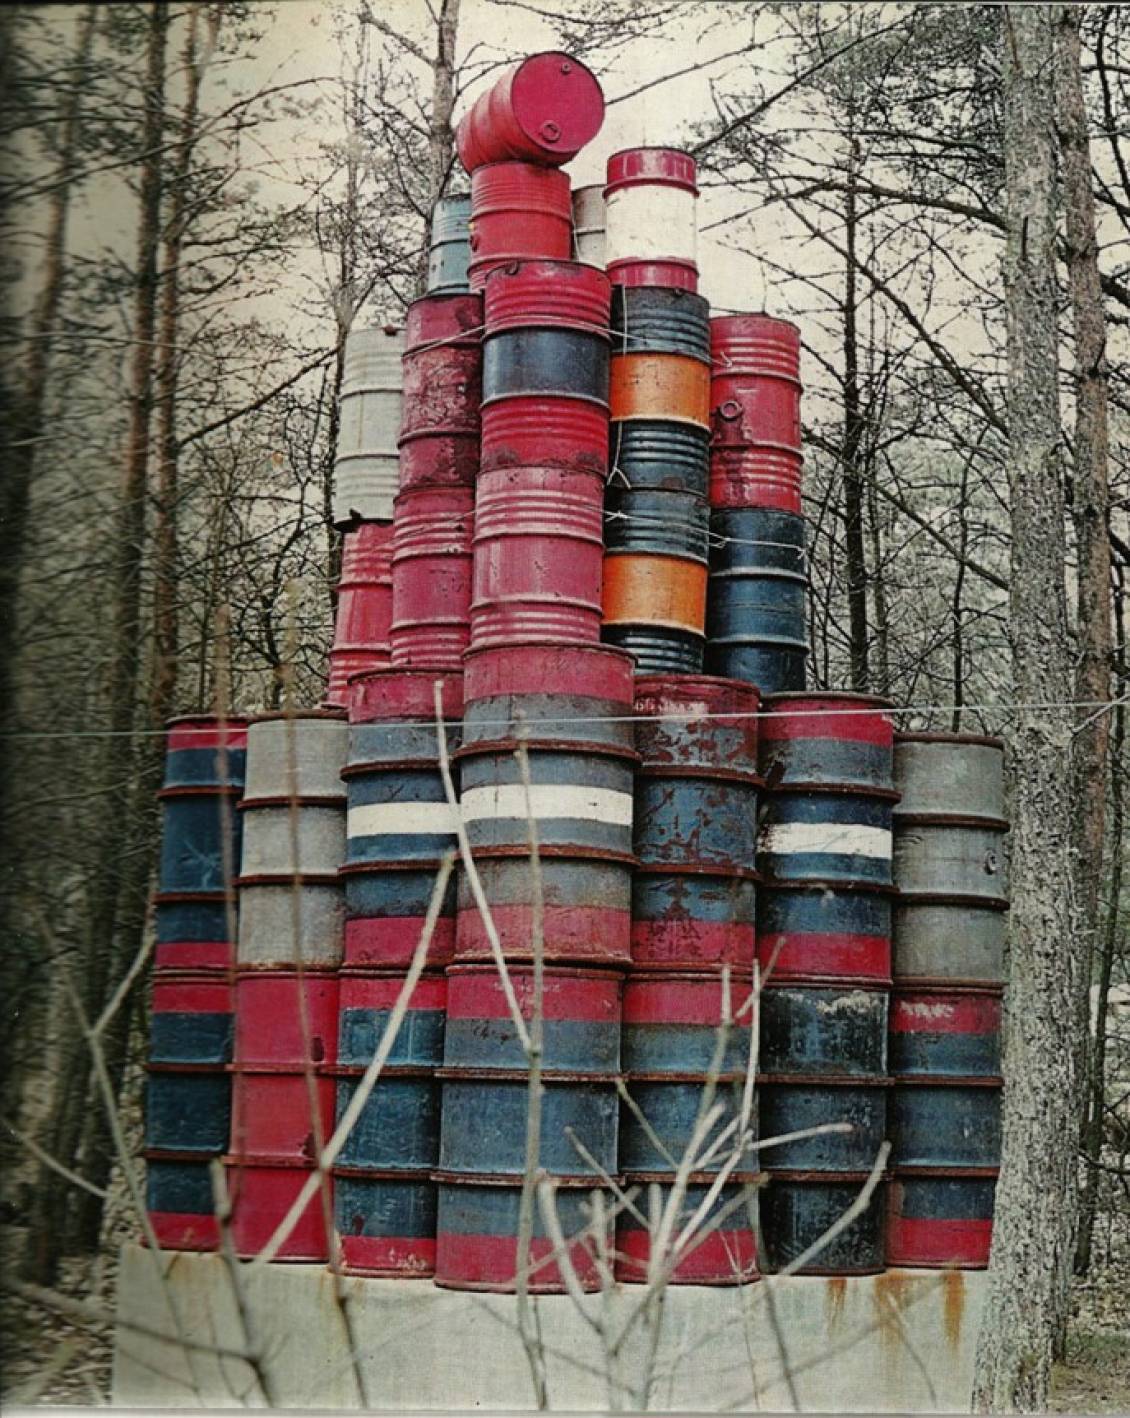 De eerste versie van Christo's '56 Barrels' uit 1968